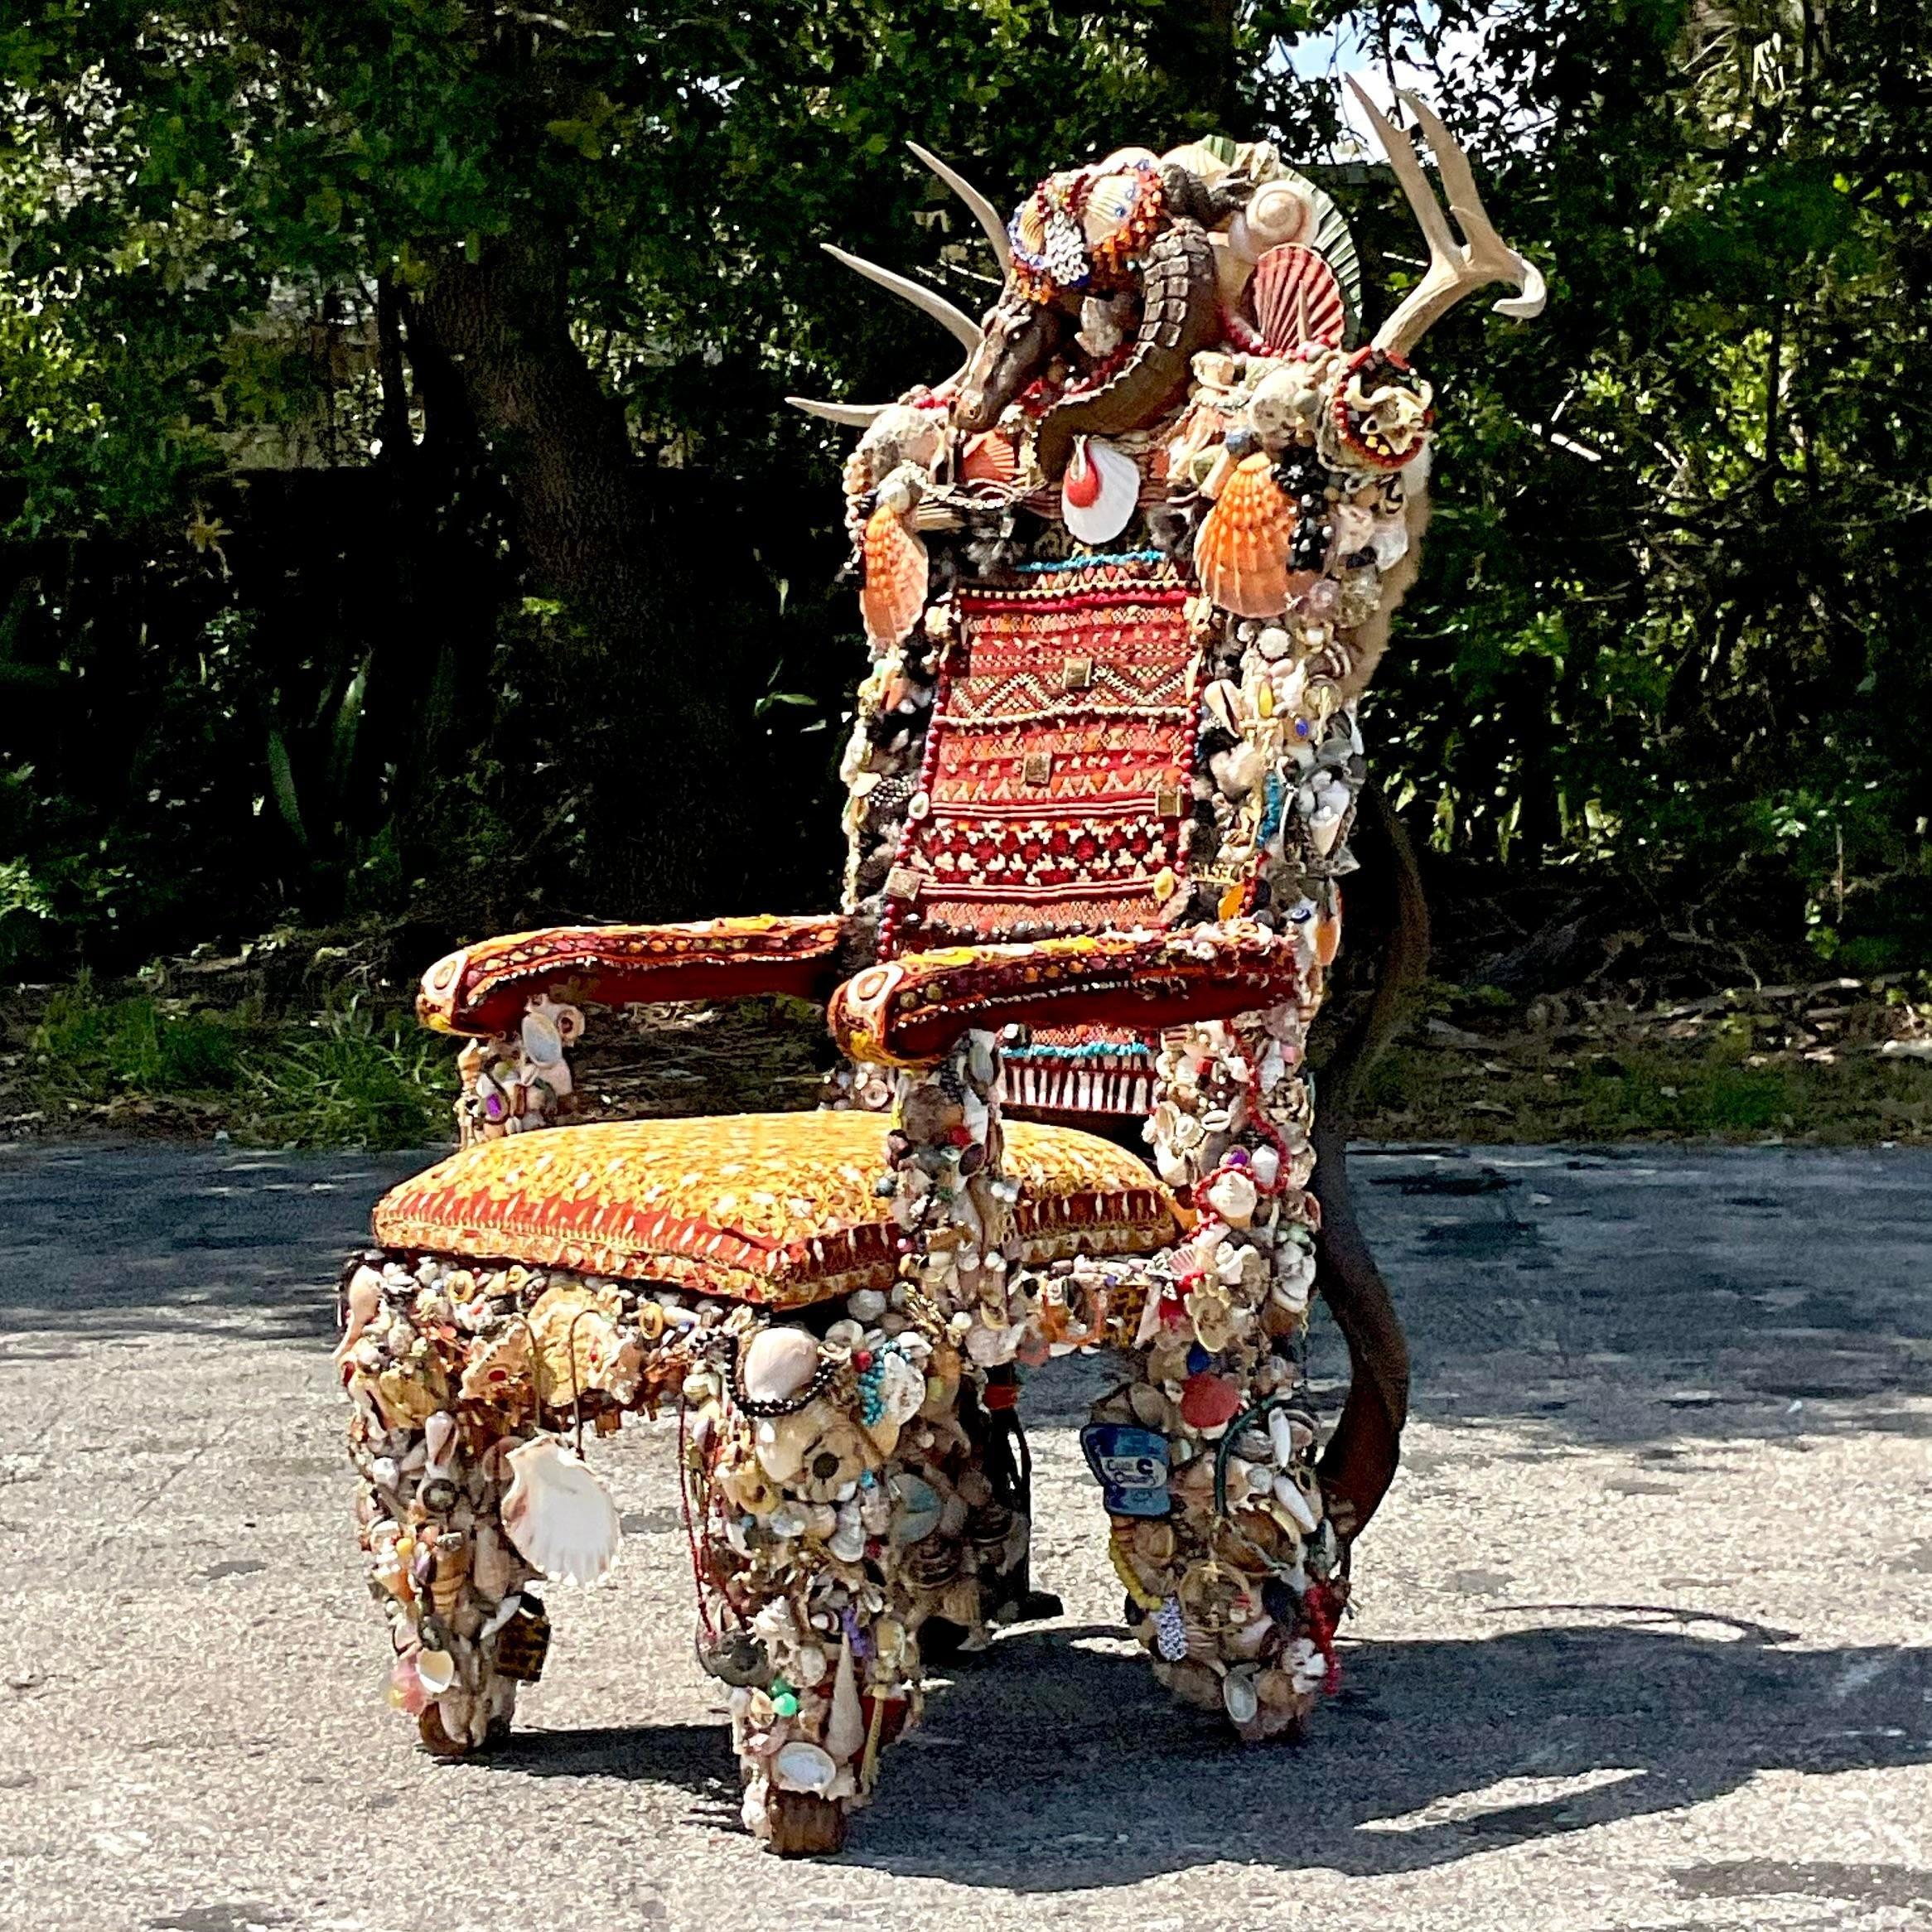 Lassen Sie sich vom Geist der amerikanischen Volkskunst anstecken - mit diesem einzigartigen, aus Fundstücken gefertigten Vintage Chair. Jedes Stück erzählt eine Geschichte und verbindet Skurrilität und Tradition zu einer einzigartigen Kreation.